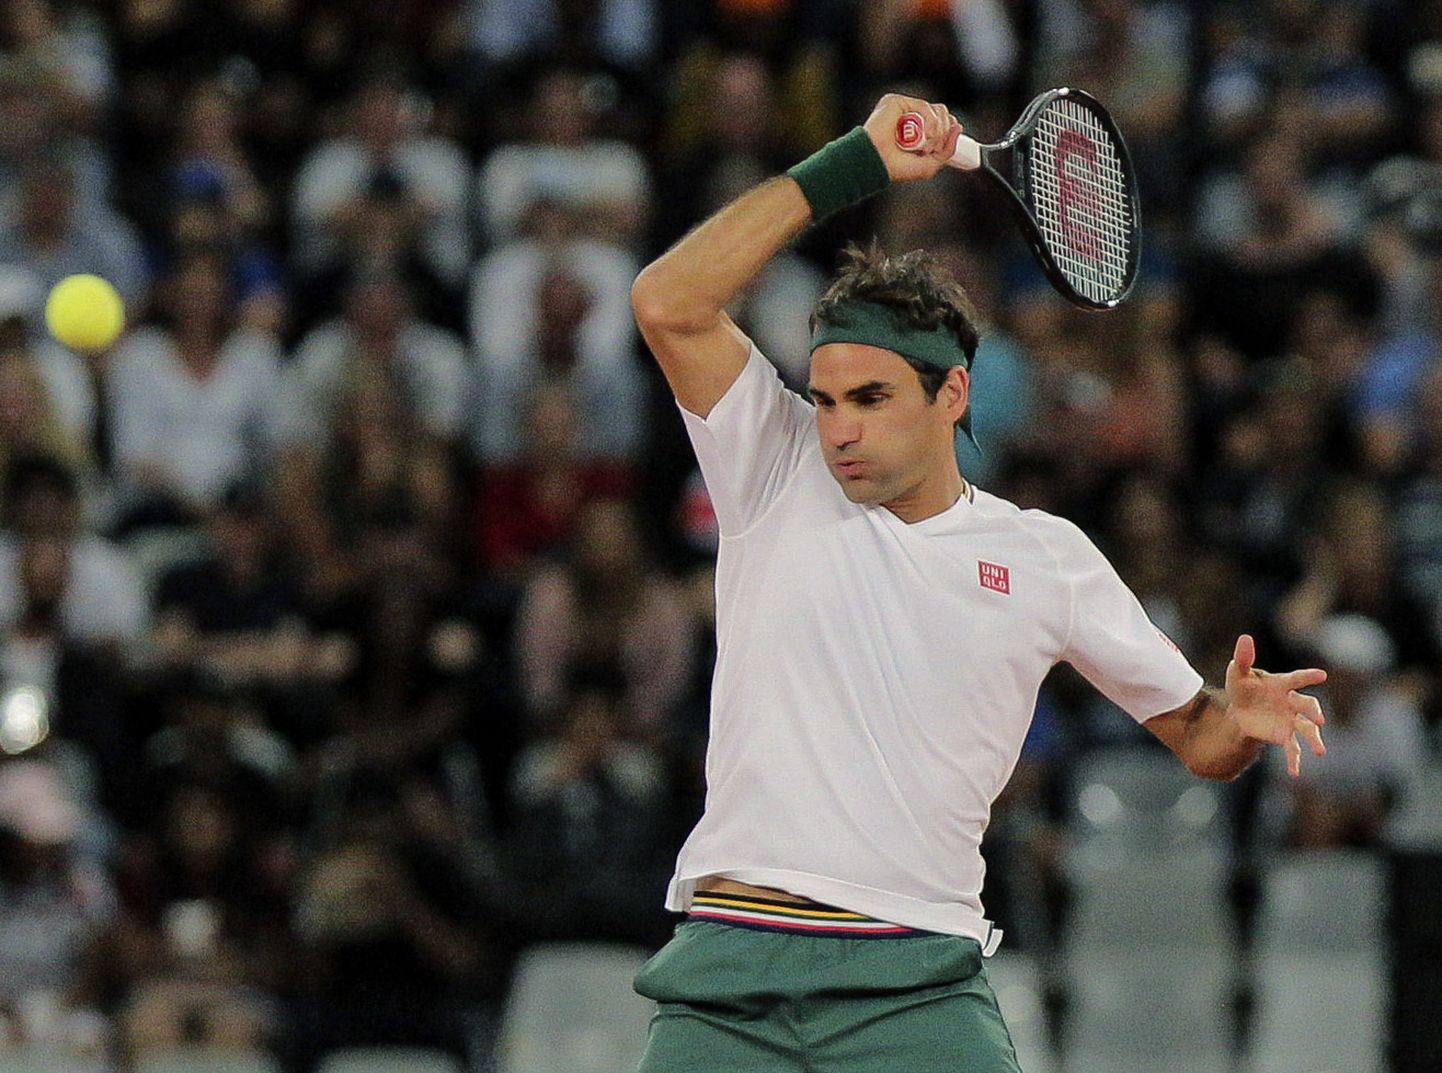 Roger Federer peab leppima harjutustega kodustes tingimusetes.